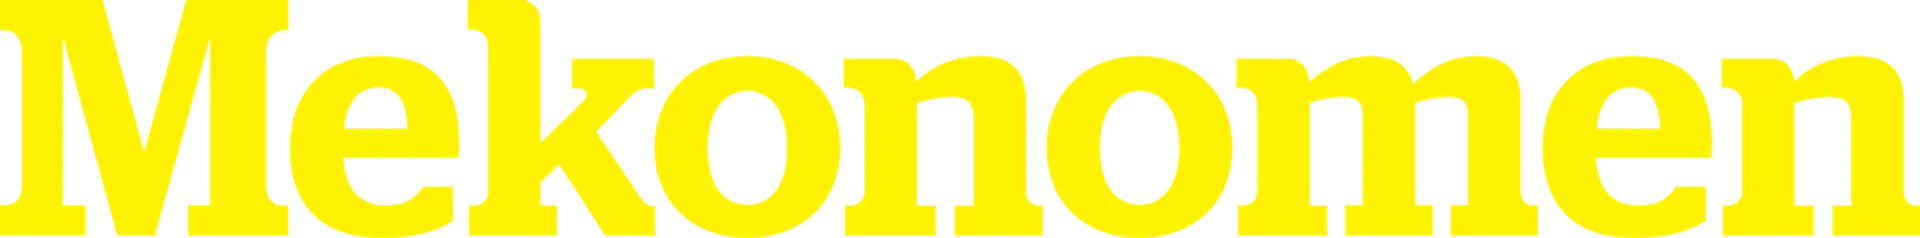 MEKONOMEN logo